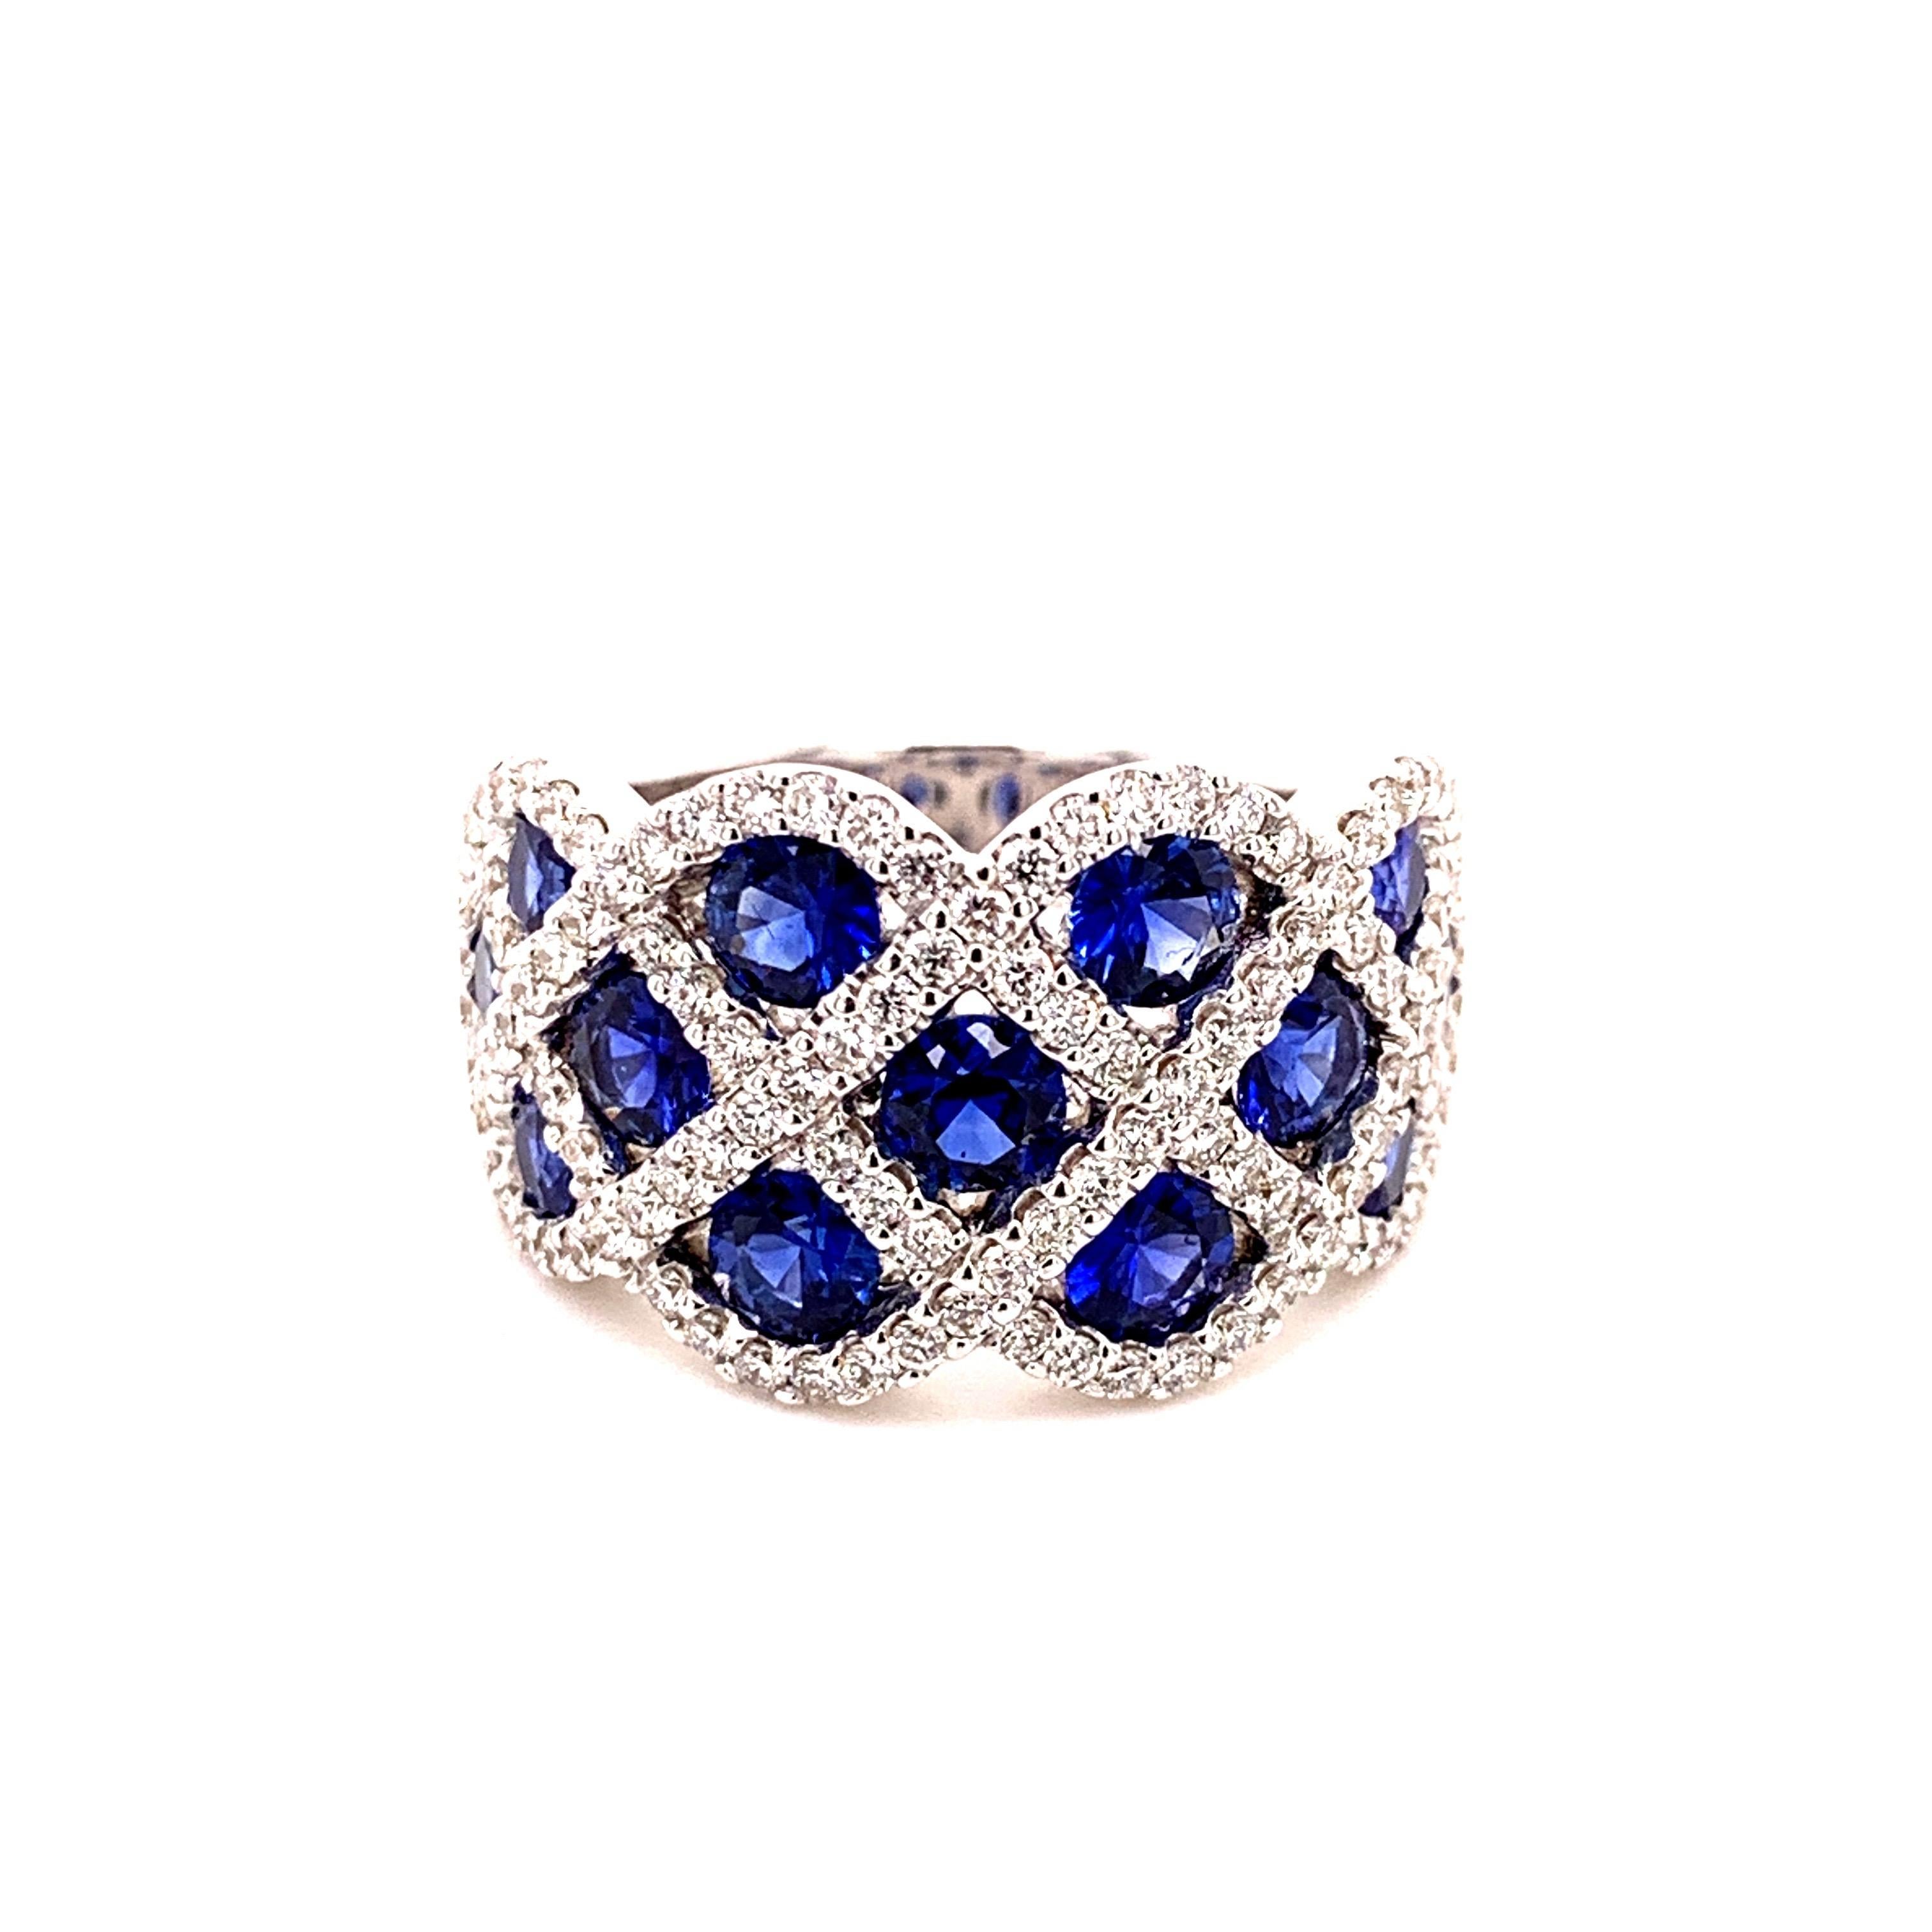 Superbe bague saphir-diamant à motif en damier. Des saphirs bleus royaux naturels de 2,27 carats, de haute brillance et de taille brillante, sont enchâssés dans la monture invisible et accentués par des diamants ronds de taille brillante. Bague à